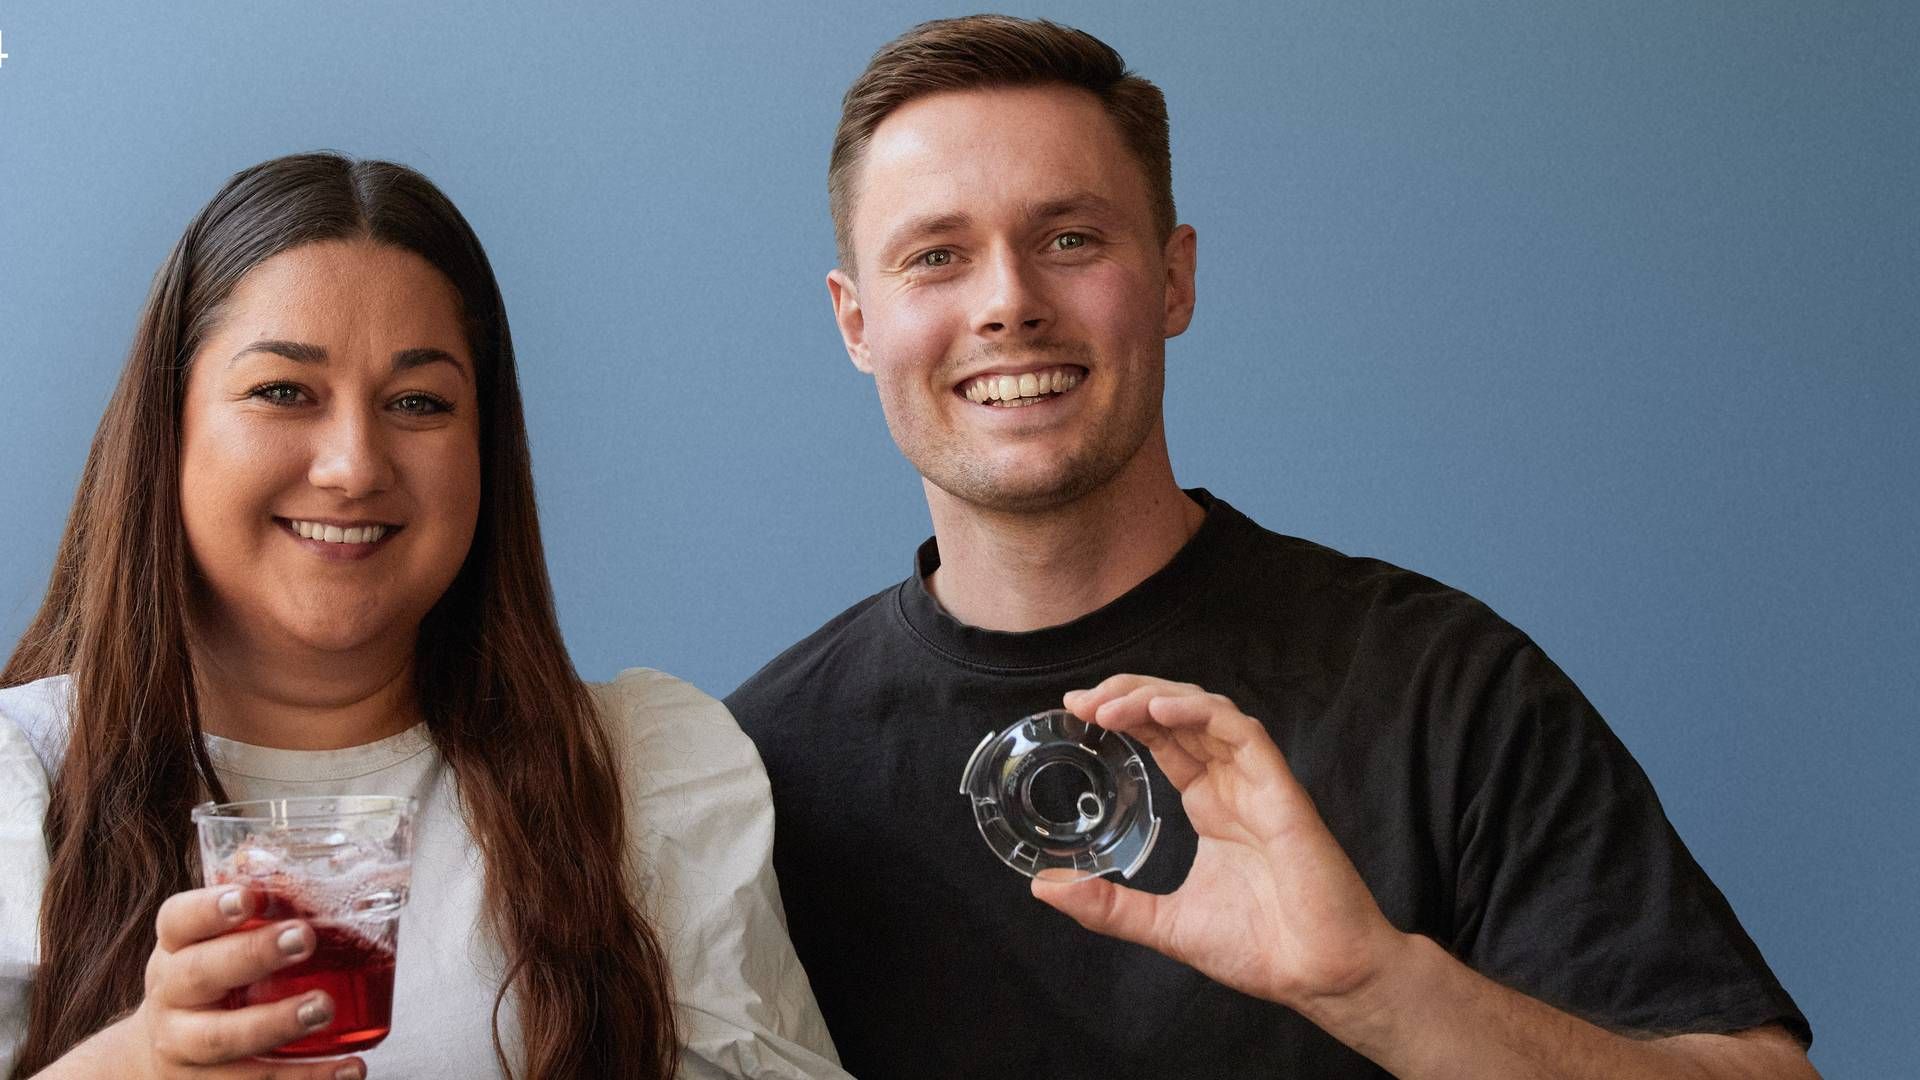 Den danske startup-virksomhed Drinksaver har netop vundet den tyske designpris Red Dot Design Award for virksomhedens spildsikre drikkeglas.